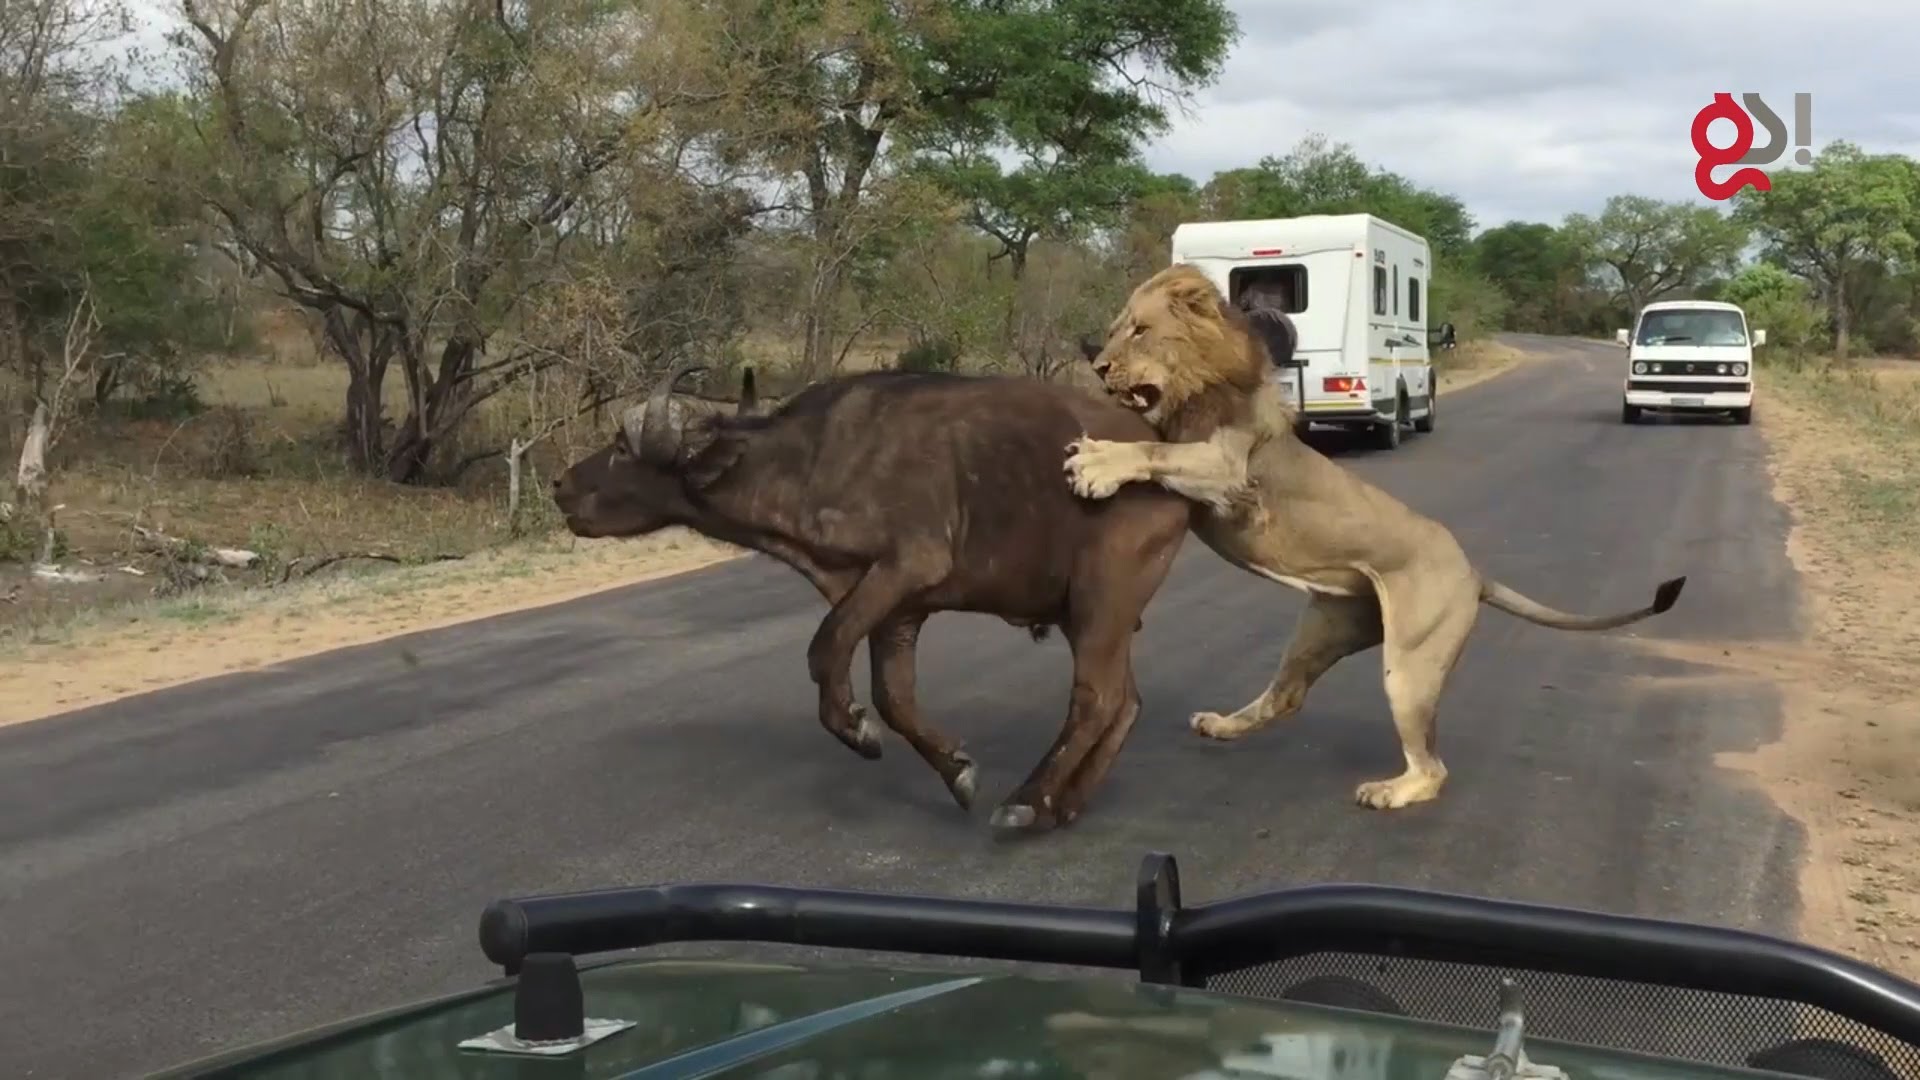 Επίθεση λιονταριών σε βούβαλο μπροστά στα μάτια τουριστών – Δείτε γιατί είναι ο βασιλιάς της ζούγκλας (φωτό, βίντεο)